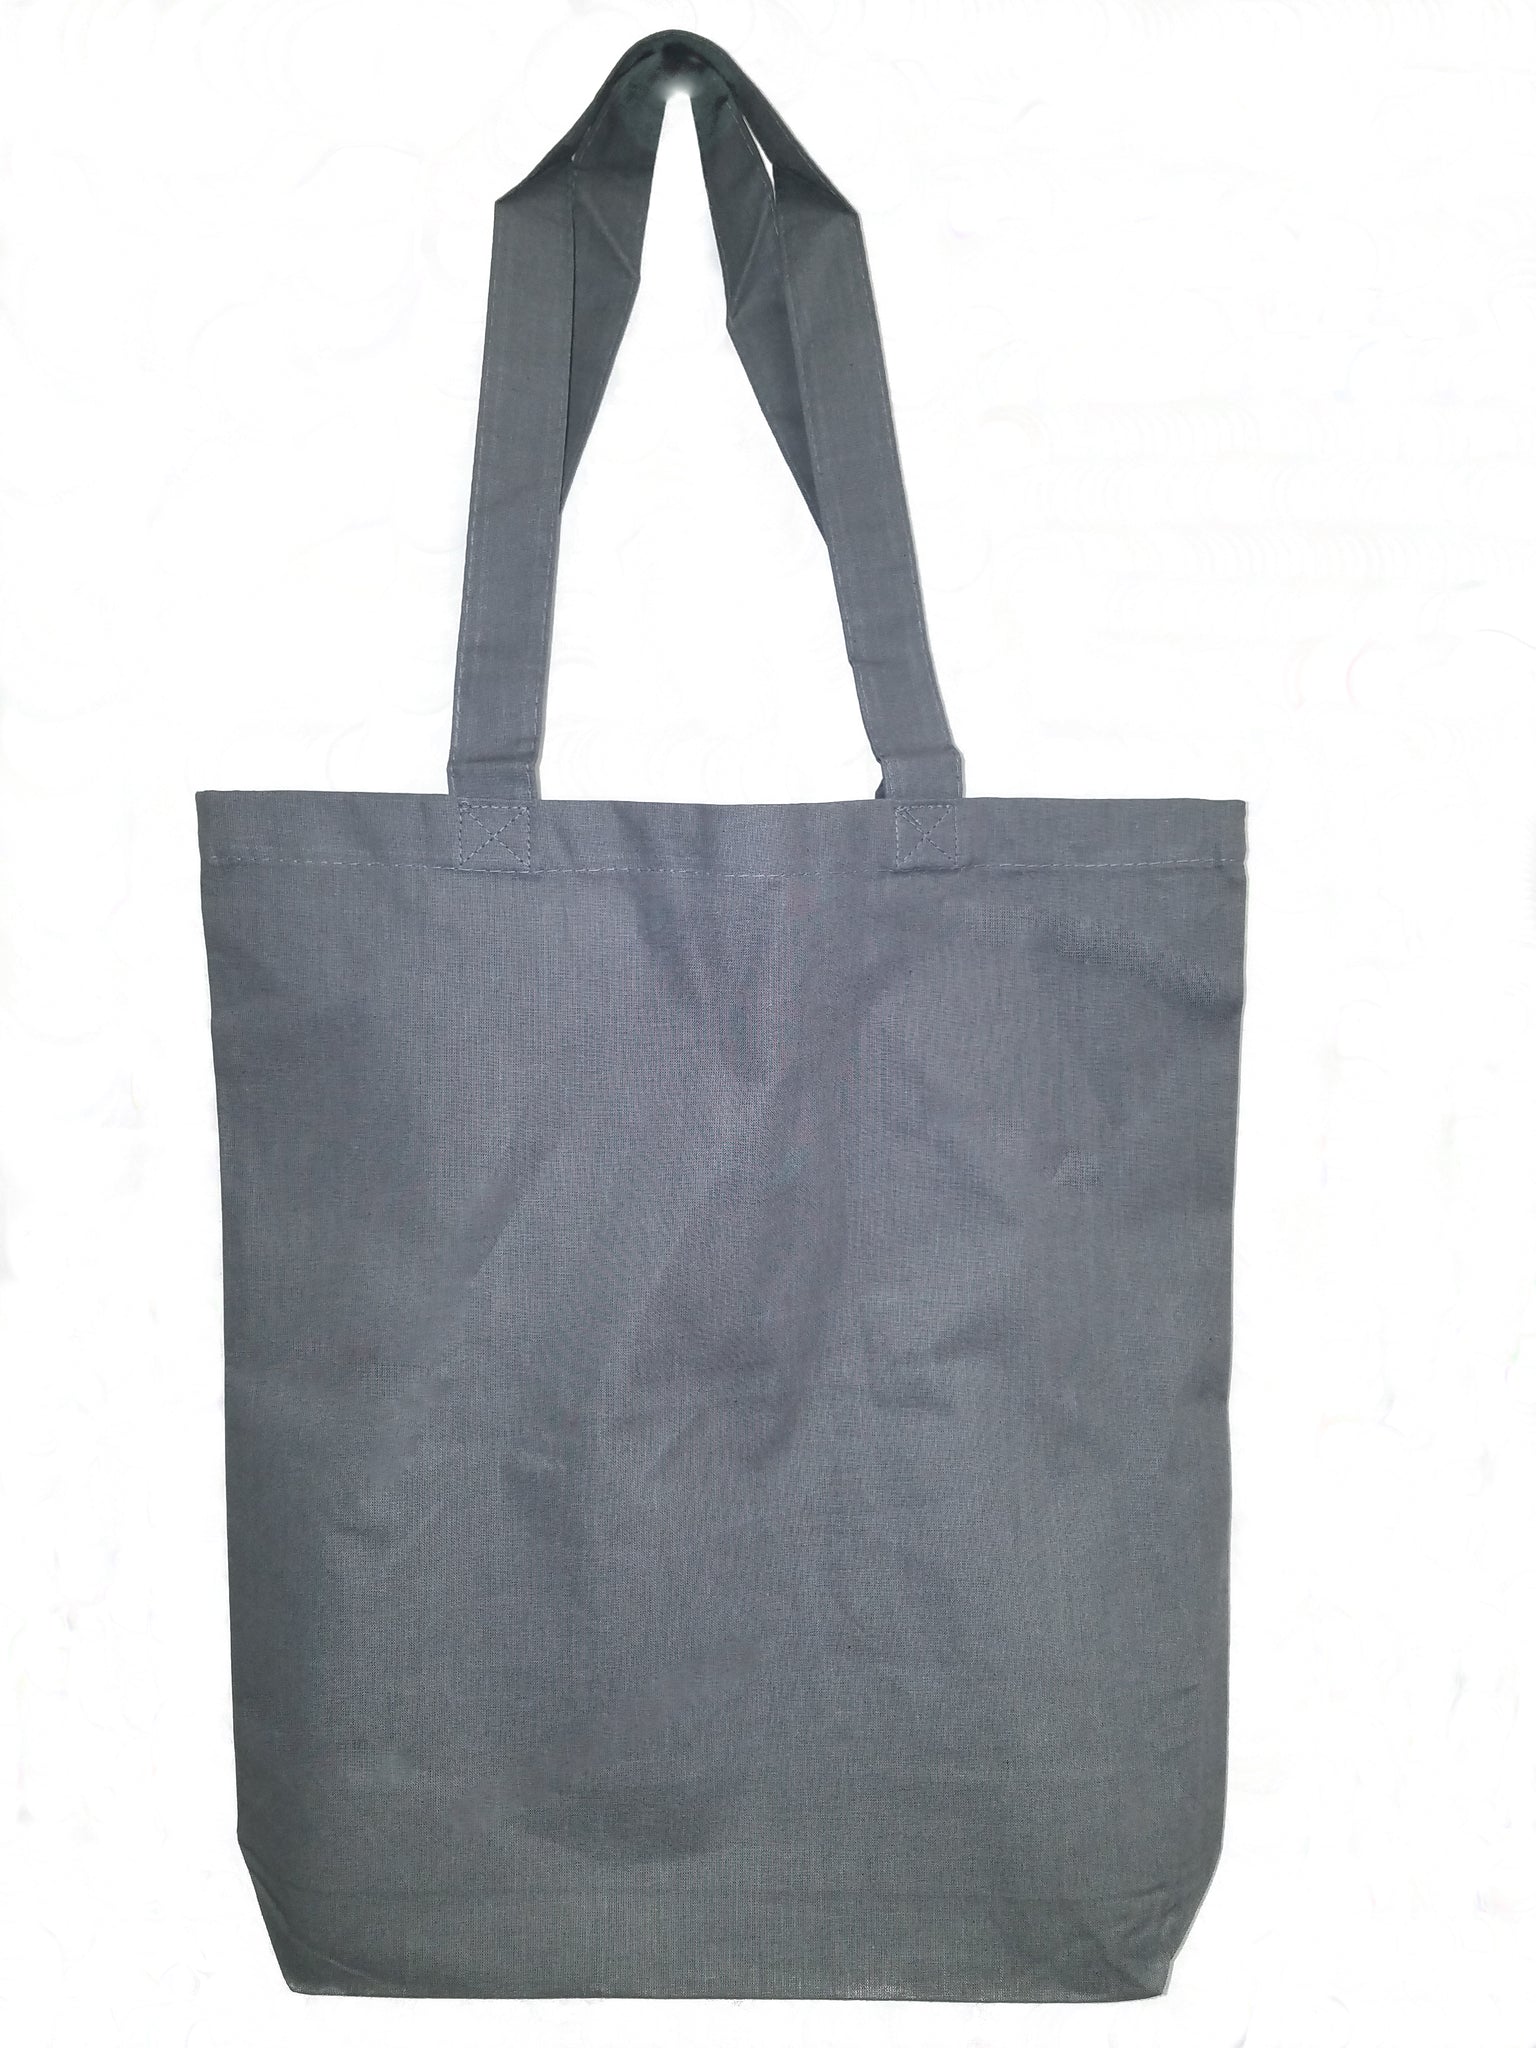 Wholesale cotton bags | Off the shelf cotton bags | Cotton Bag Co.